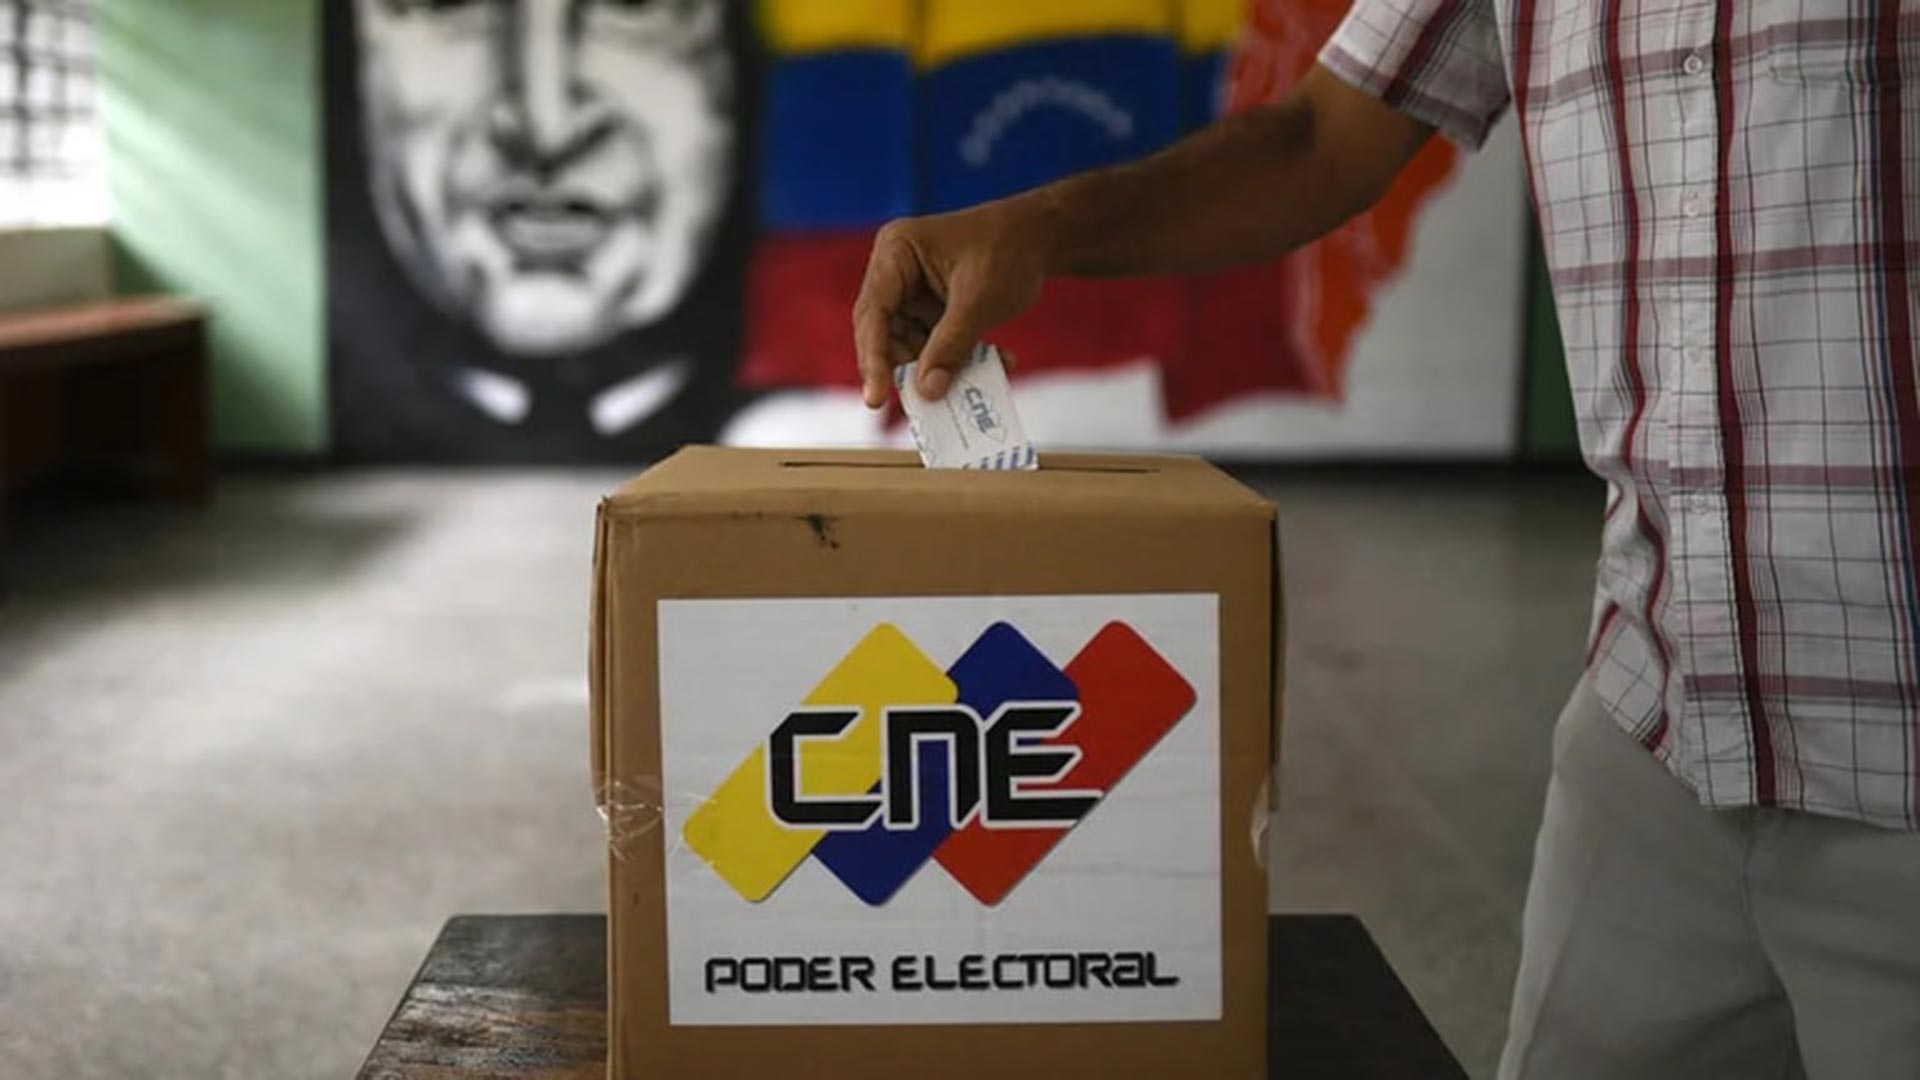 La UE advirtió que no hay avances en las reformas democráticas en Venezuela, sino “pasos negativos”